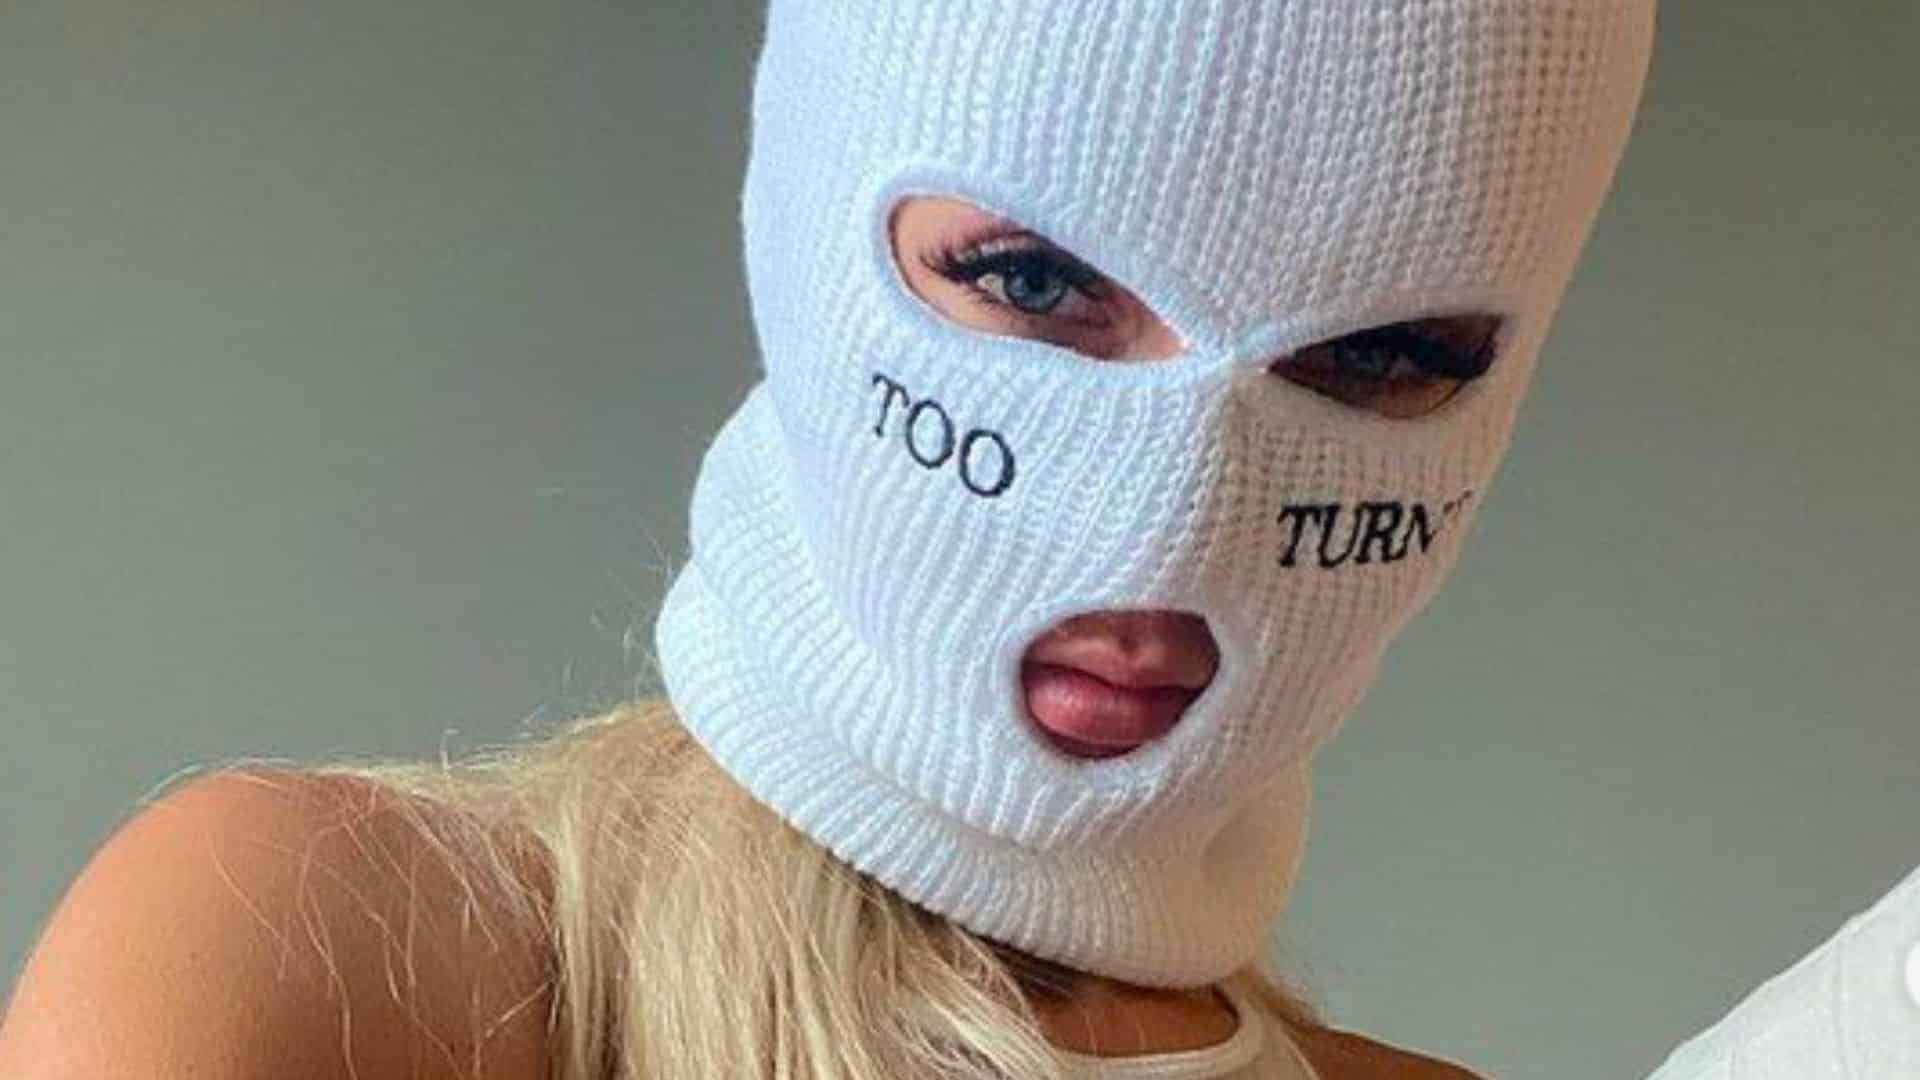 SkiMaskGirl wearing white ski mask with too turnt wording